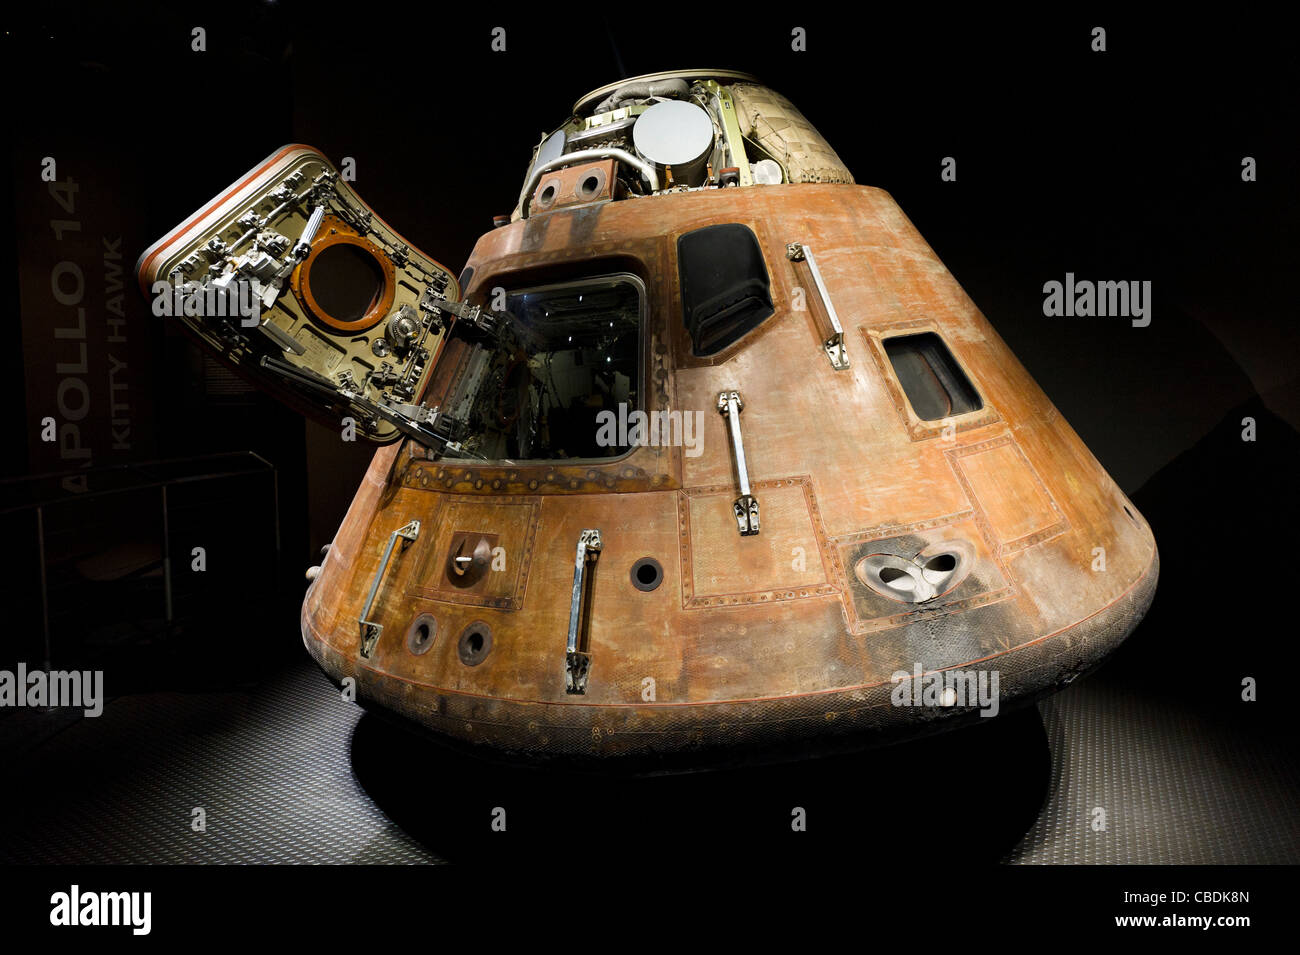 Le module de commande de la mission Apollo 15 lune, Saturne V complexe, Kennedy Space Center, Merritt Island, Florida, USA Banque D'Images